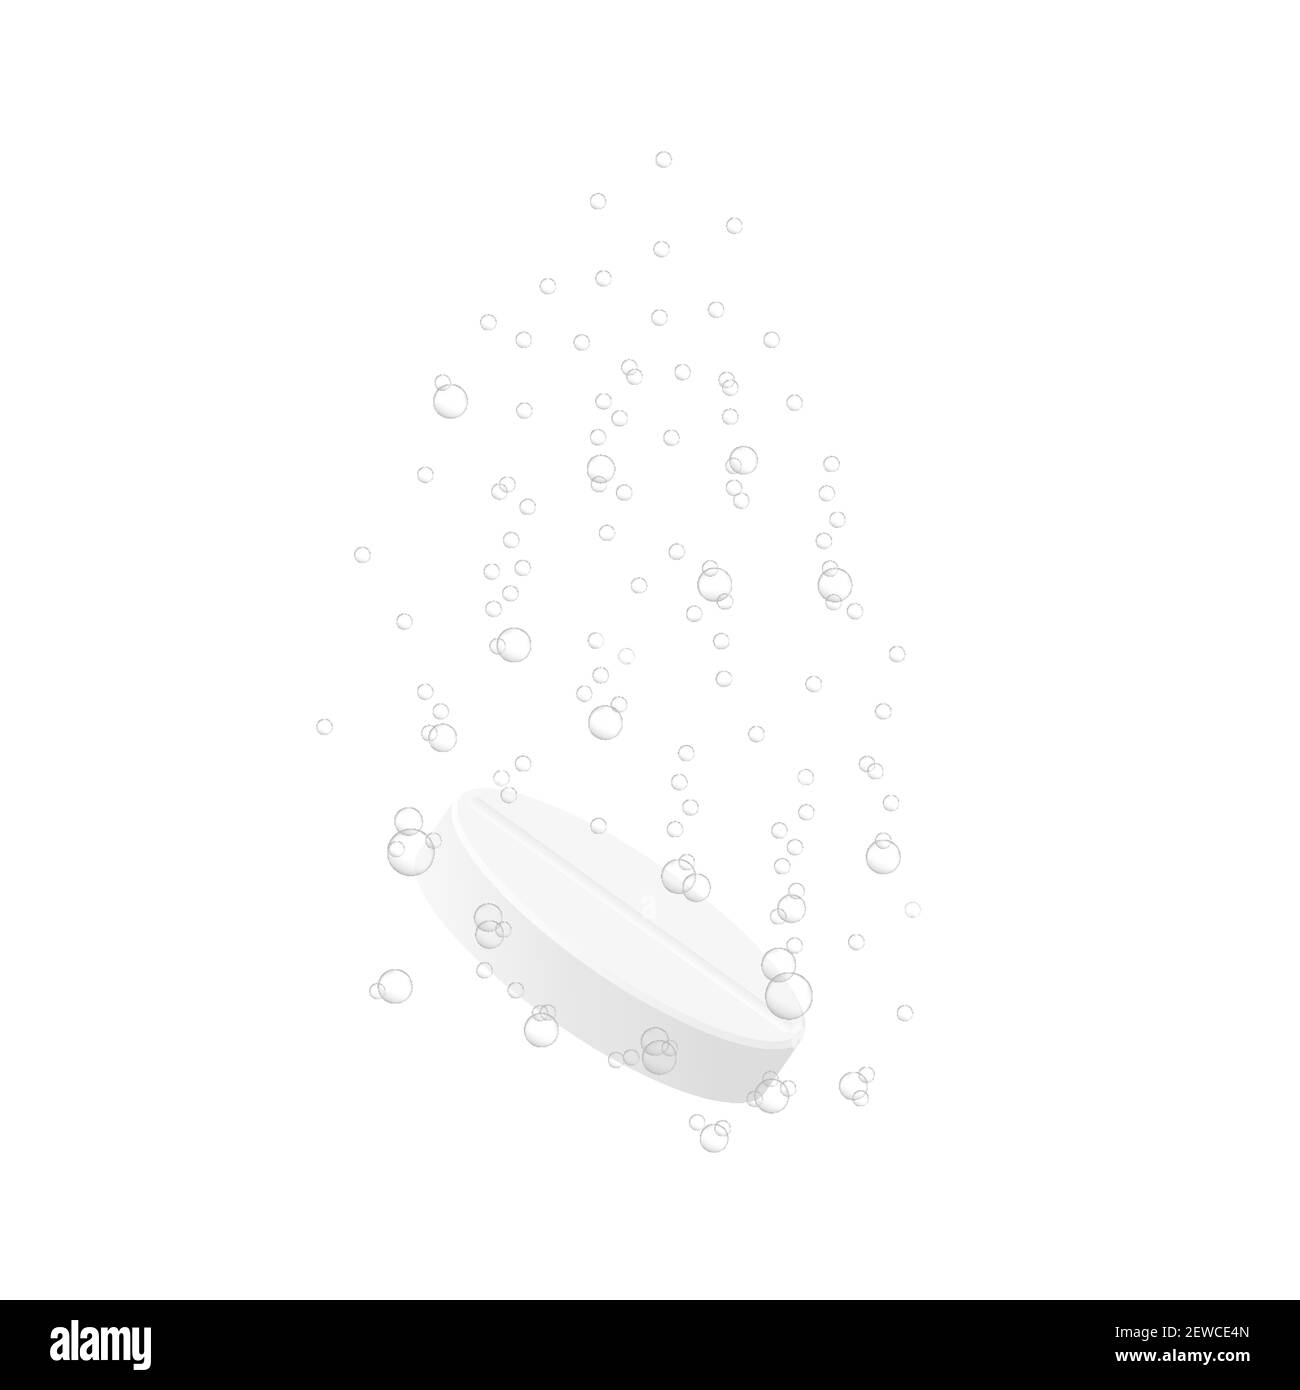 Compressa solubile effervescente con bolle subacquee isolate su fondo bianco. Pillola medicinale che si scioglie in acqua. Illustrazione vettoriale realistica. Illustrazione Vettoriale